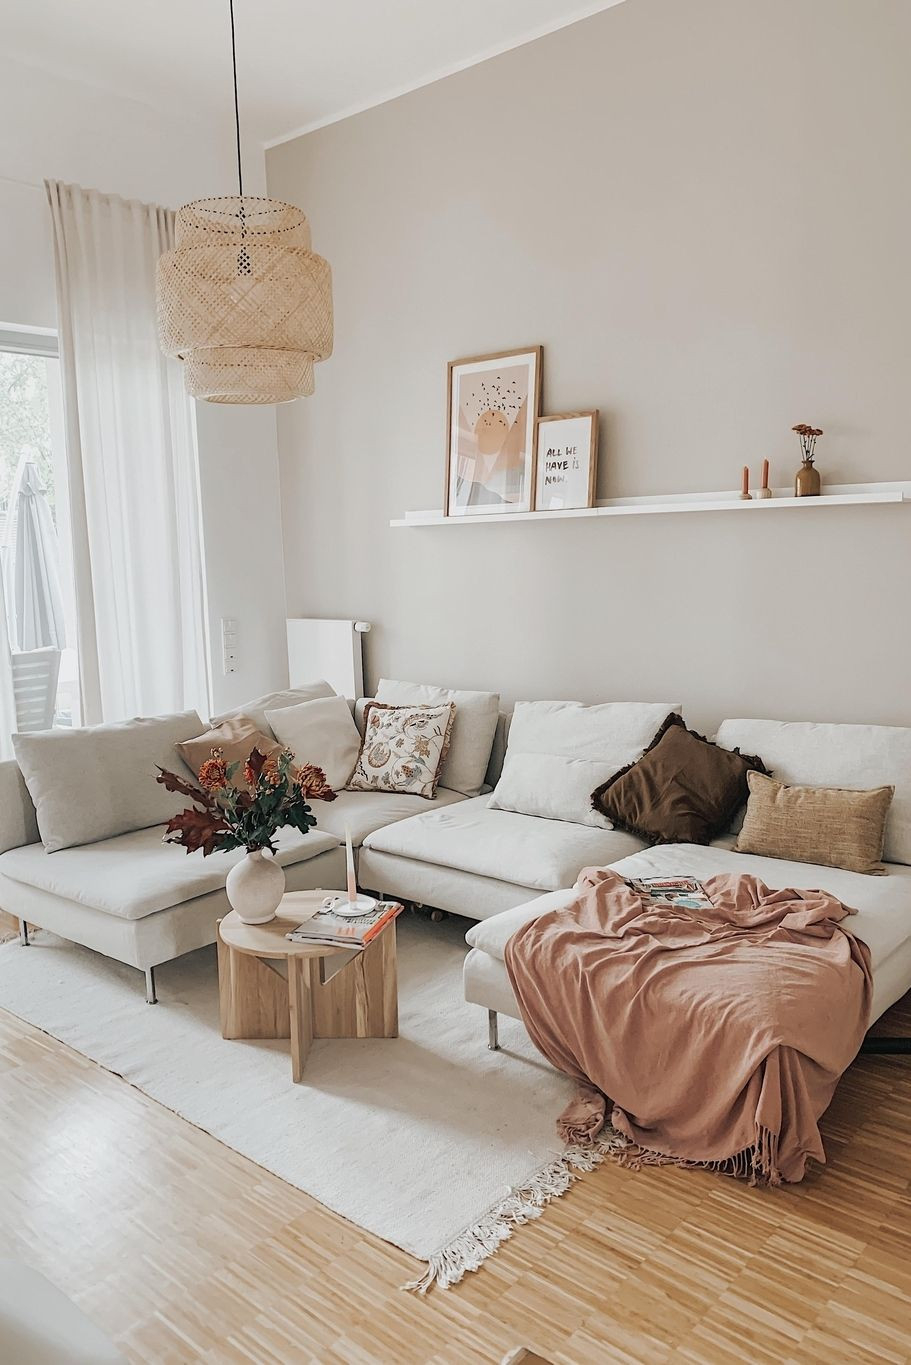 Happyweekend #Wohnzimmer #Hygge #Couchstyle | Wohnungseinrichtung regarding Modern Pinterest Wohnzimmer